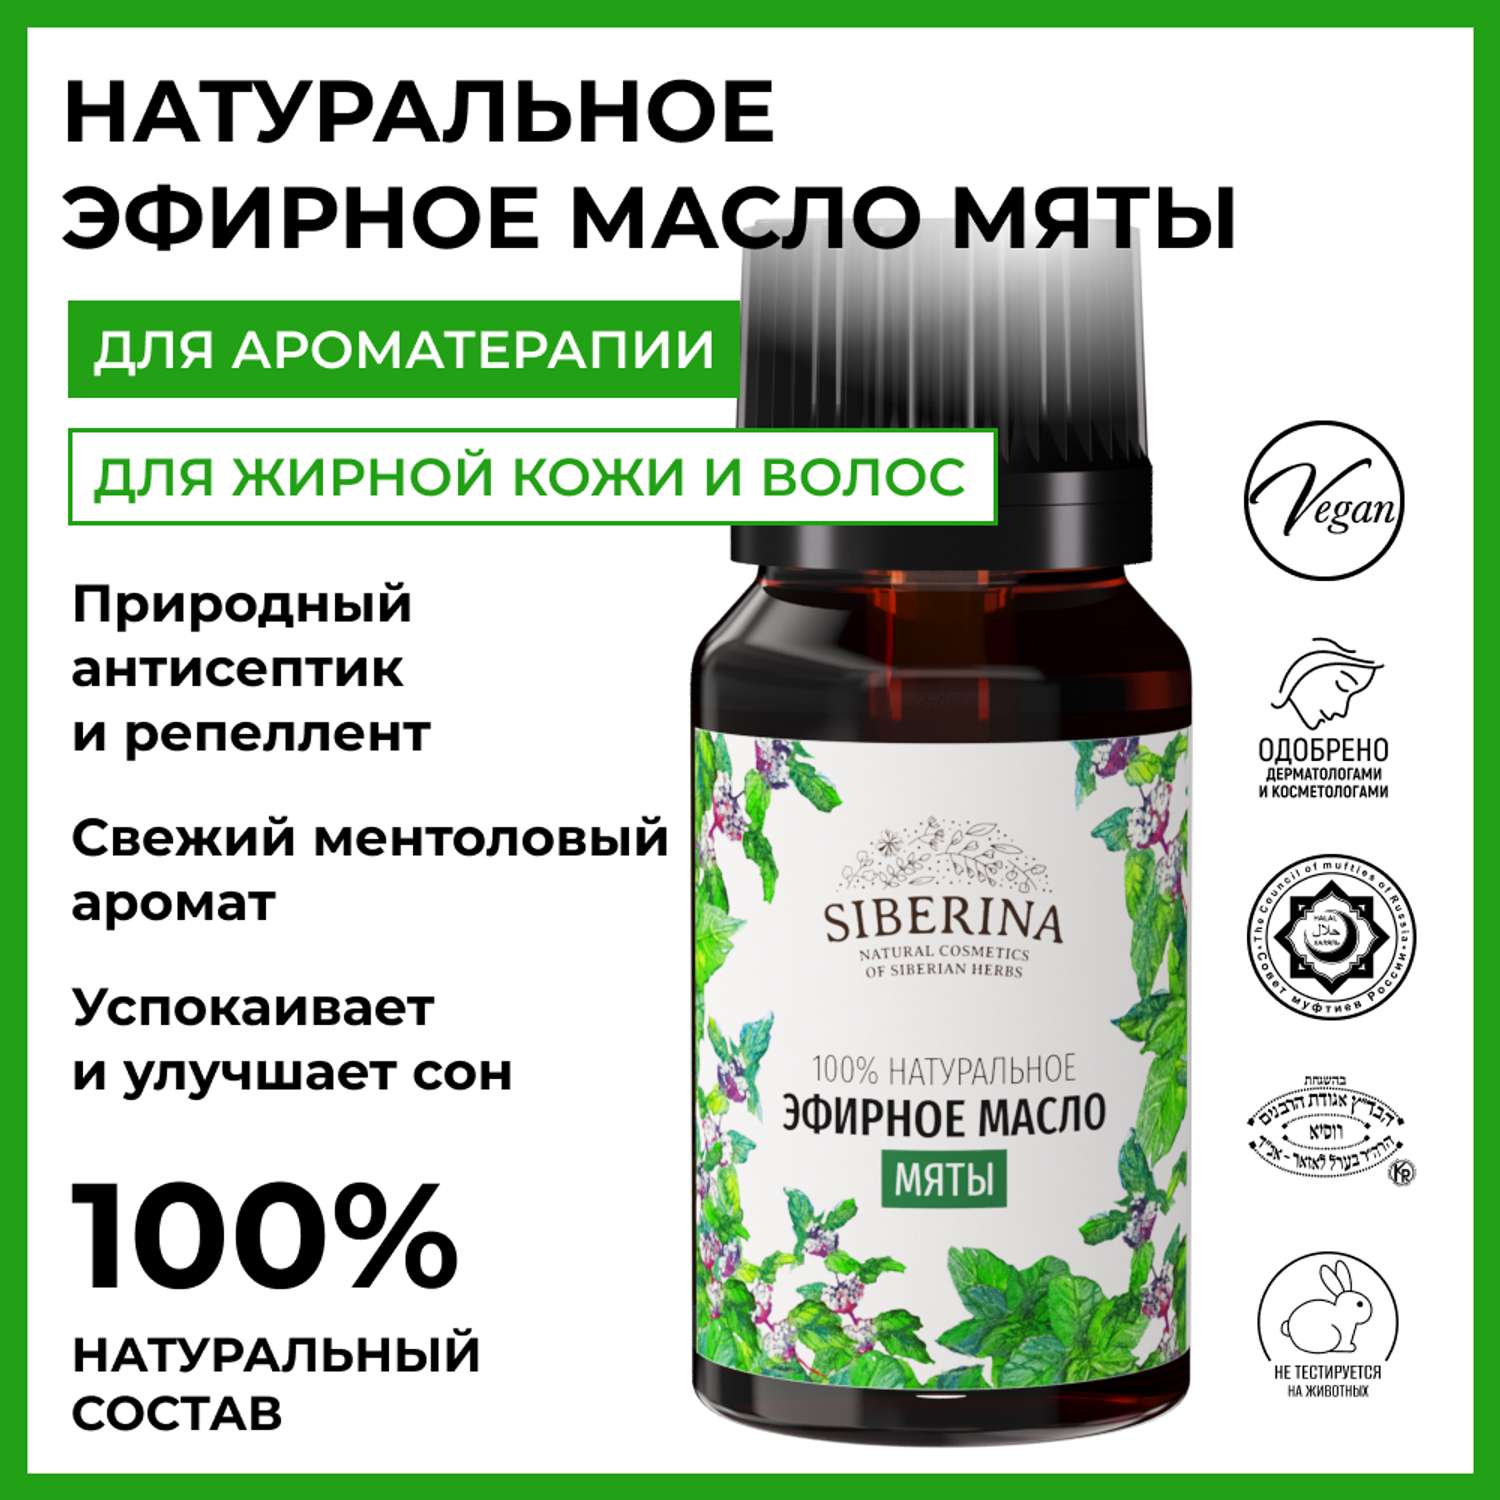 Эфирное масло Siberina натуральное «Мяты» с антисептическим действием 8 мл - фото 2